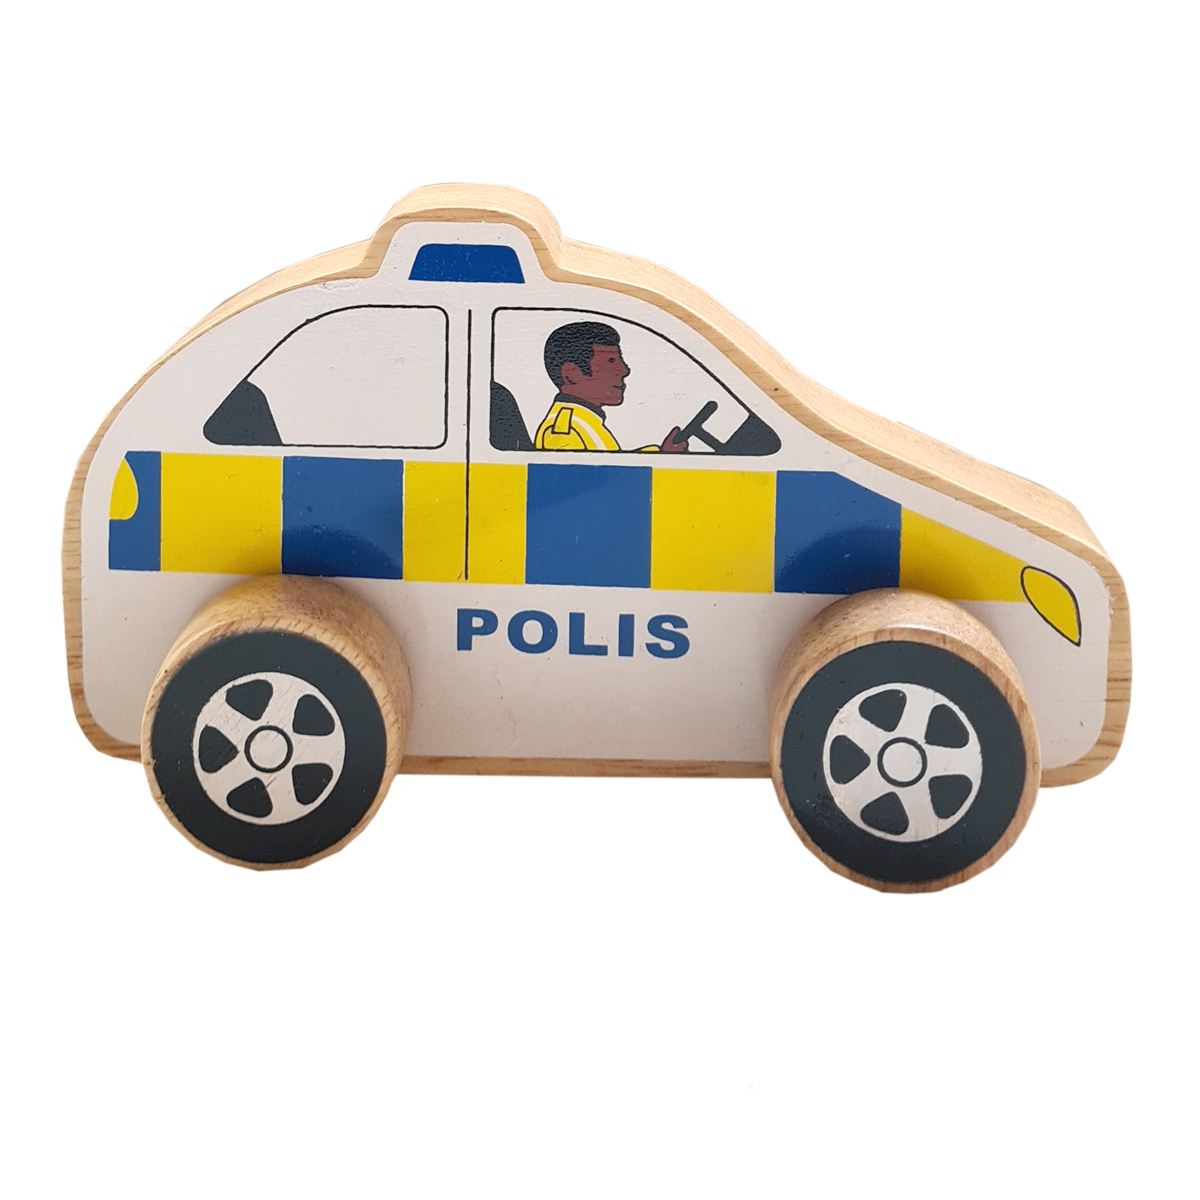 Polisbil av gummiträ FairTrade från LankaKade ekologisk och giftfri